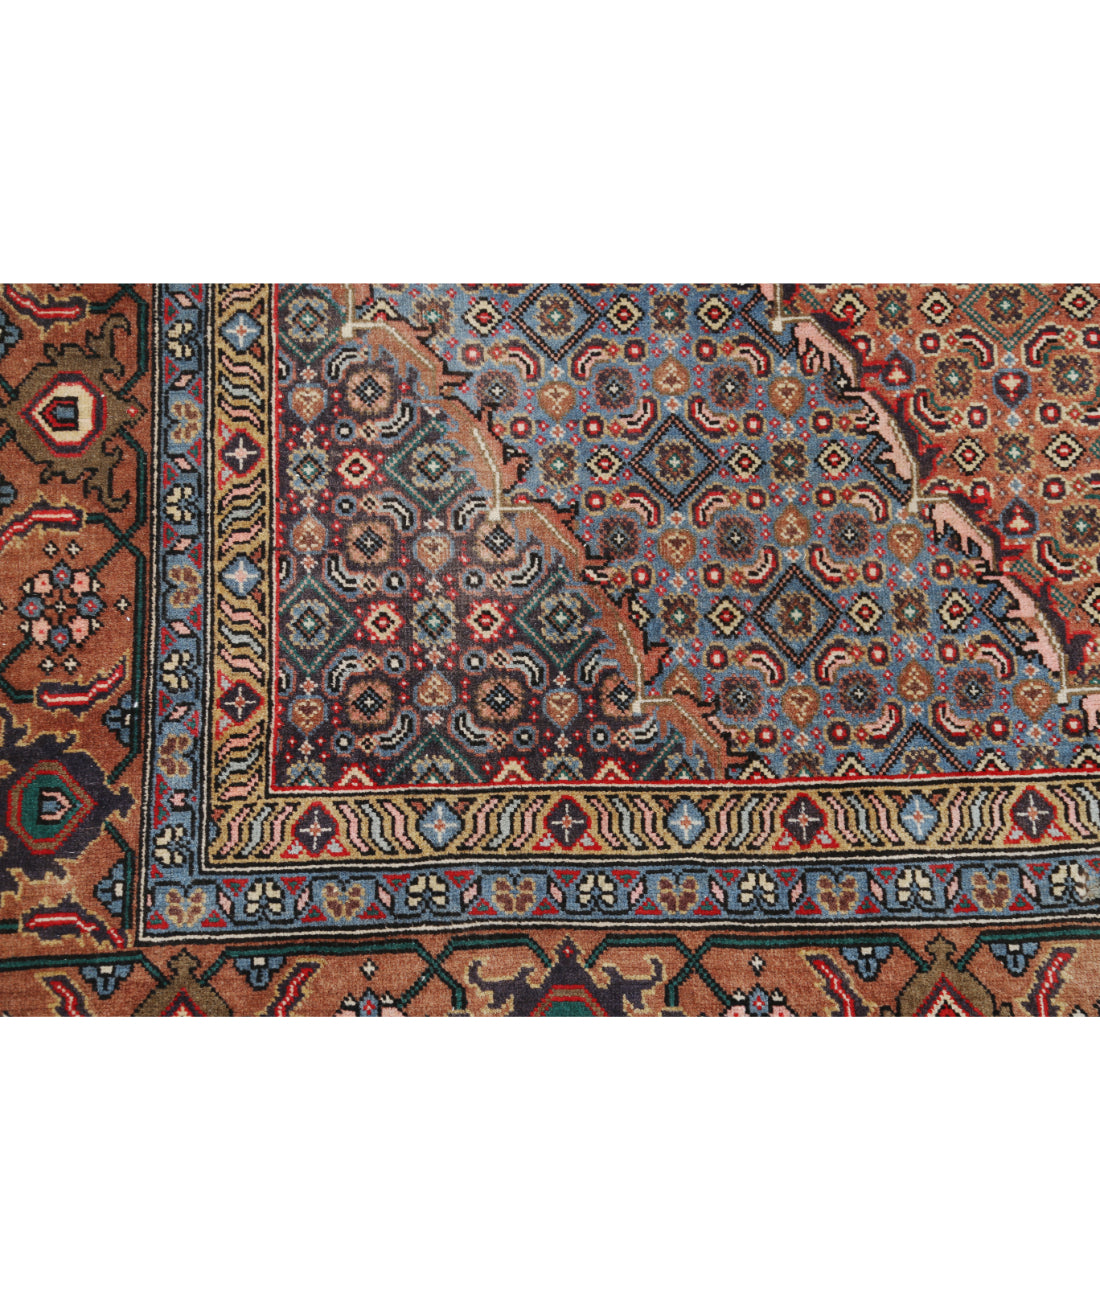 Hand Knotted Persian Bijar Wool Rug - 6'4'' x 7'9'' 6' 4" X 7' 9" (193 X 236) / Brown / Blue